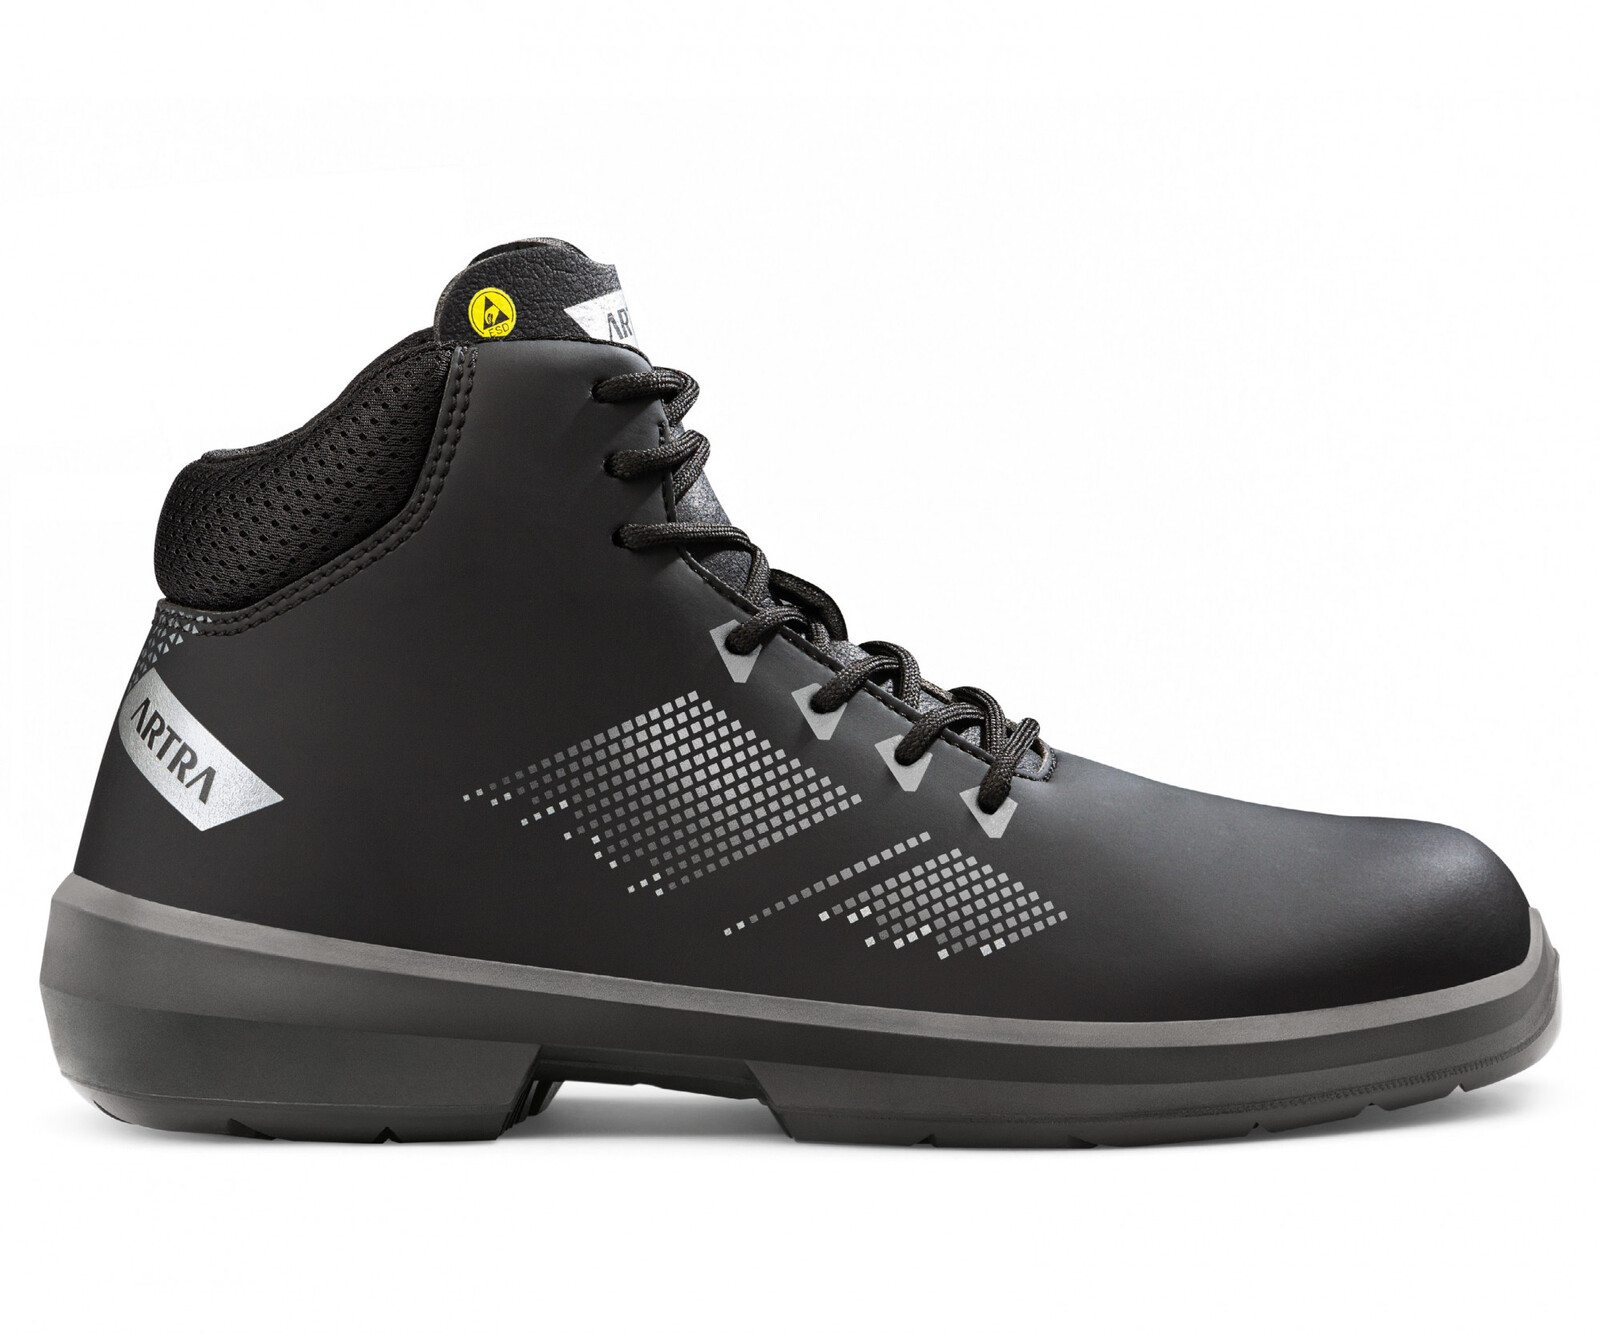 Zimná bezpečnostná členková obuv Artra Arrival 855 676560 S3 CI SRC ESD MF - veľkosť: 36, farba: čierna/sivá